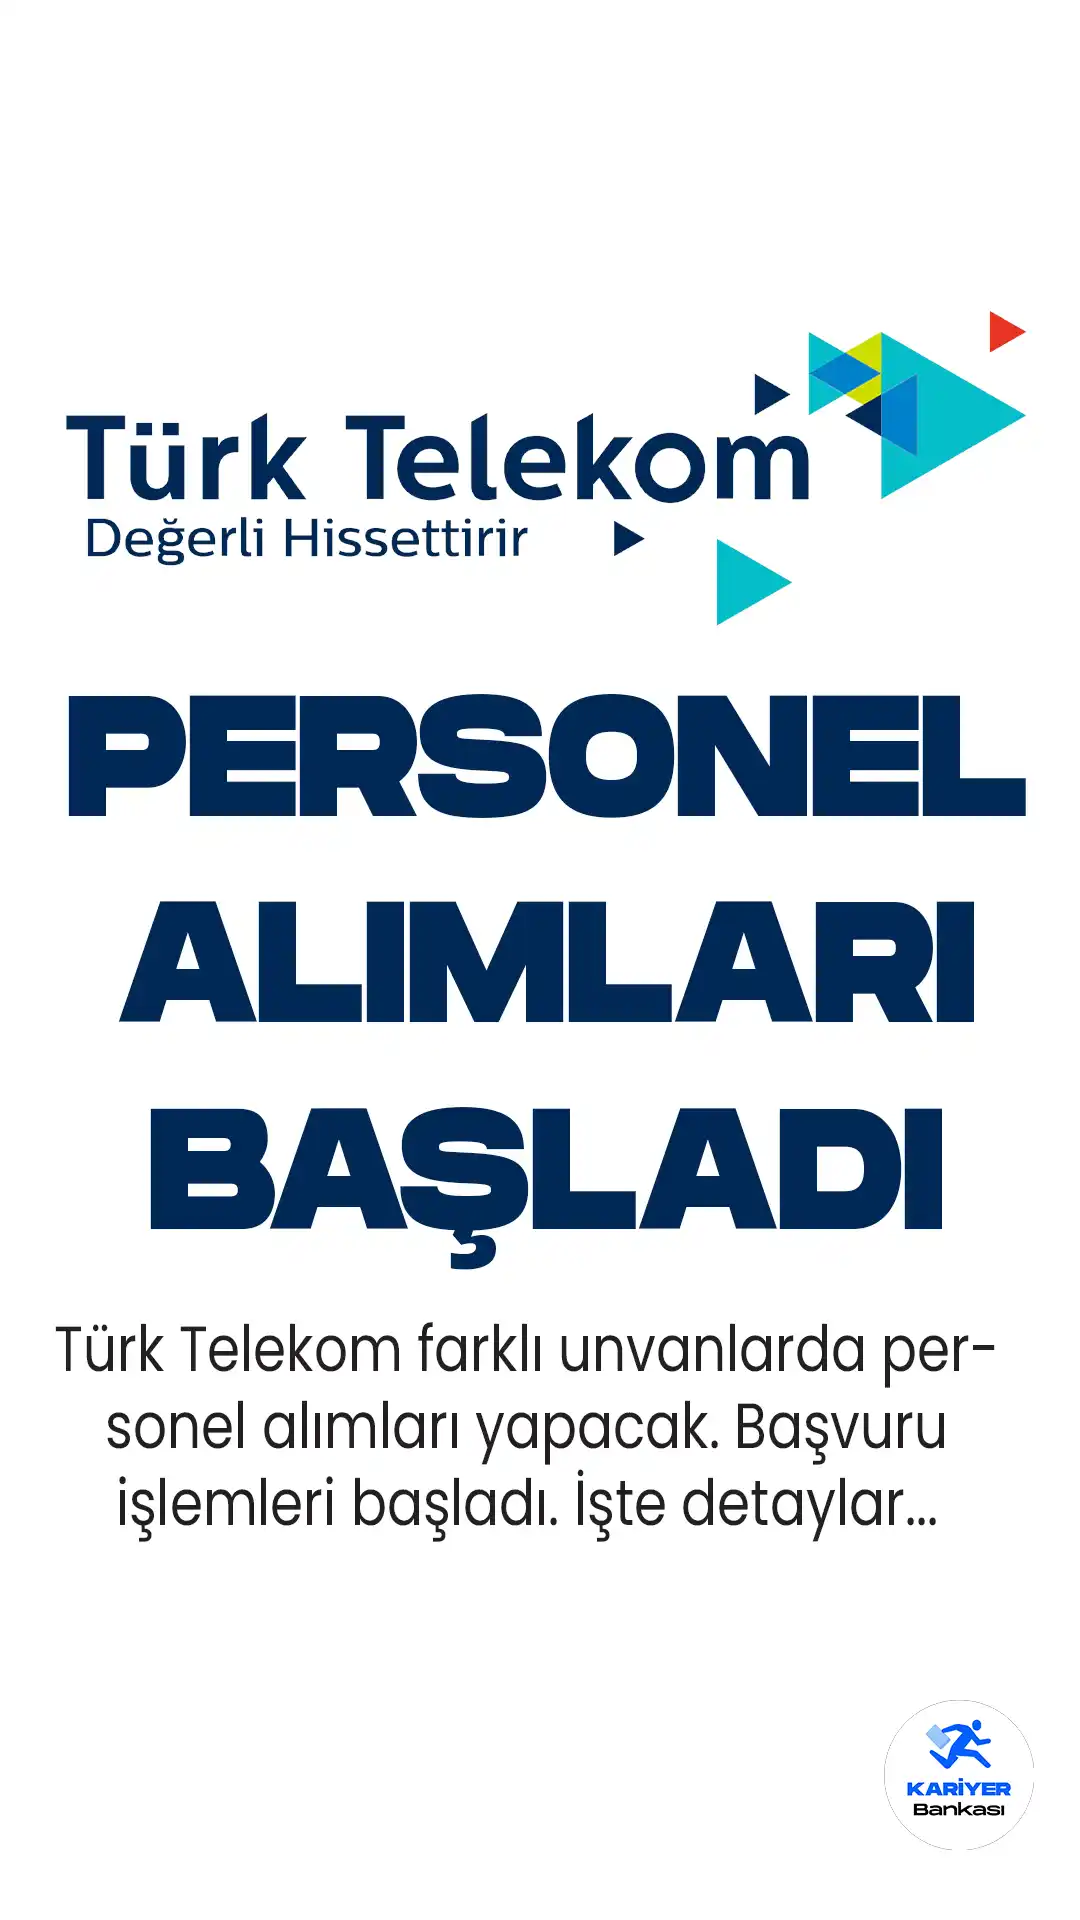 Türk Telekom, farklı pozisyonlarda çalışacak personel alımı için 12 iş ilanı yayımladı. ilgili alımlara başvuru işlemleri başladı.